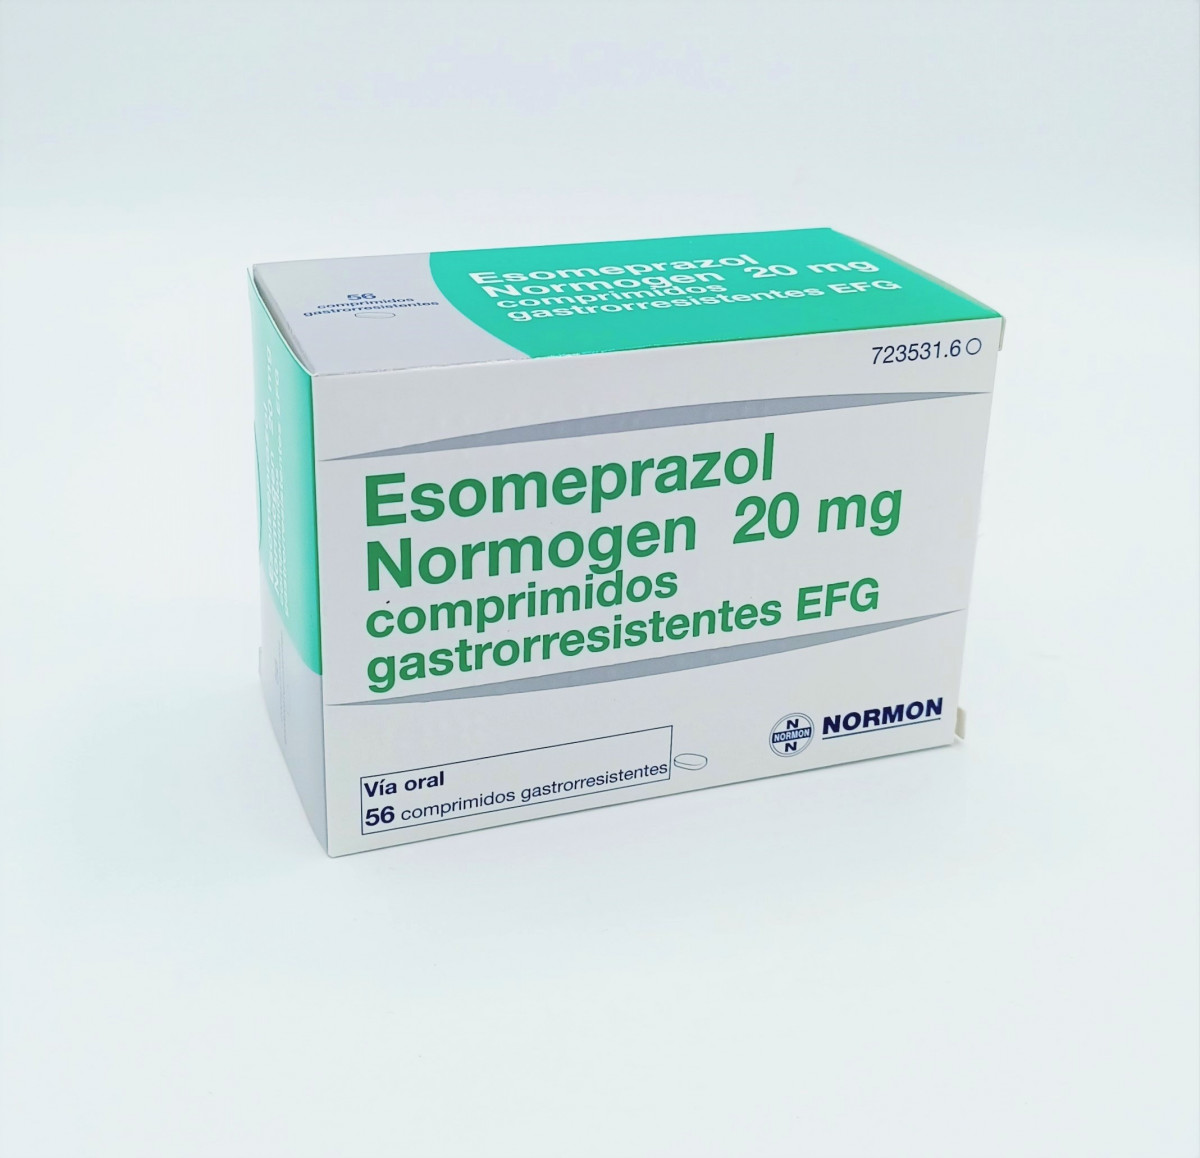 ESOMEPRAZOL NORMOGEN 20 MG COMPRIMIDOS GASTRORRESISTENTES EFG 56 comprimidos (Blister OPA/Al/PE-Al/PE) fotografía del envase.